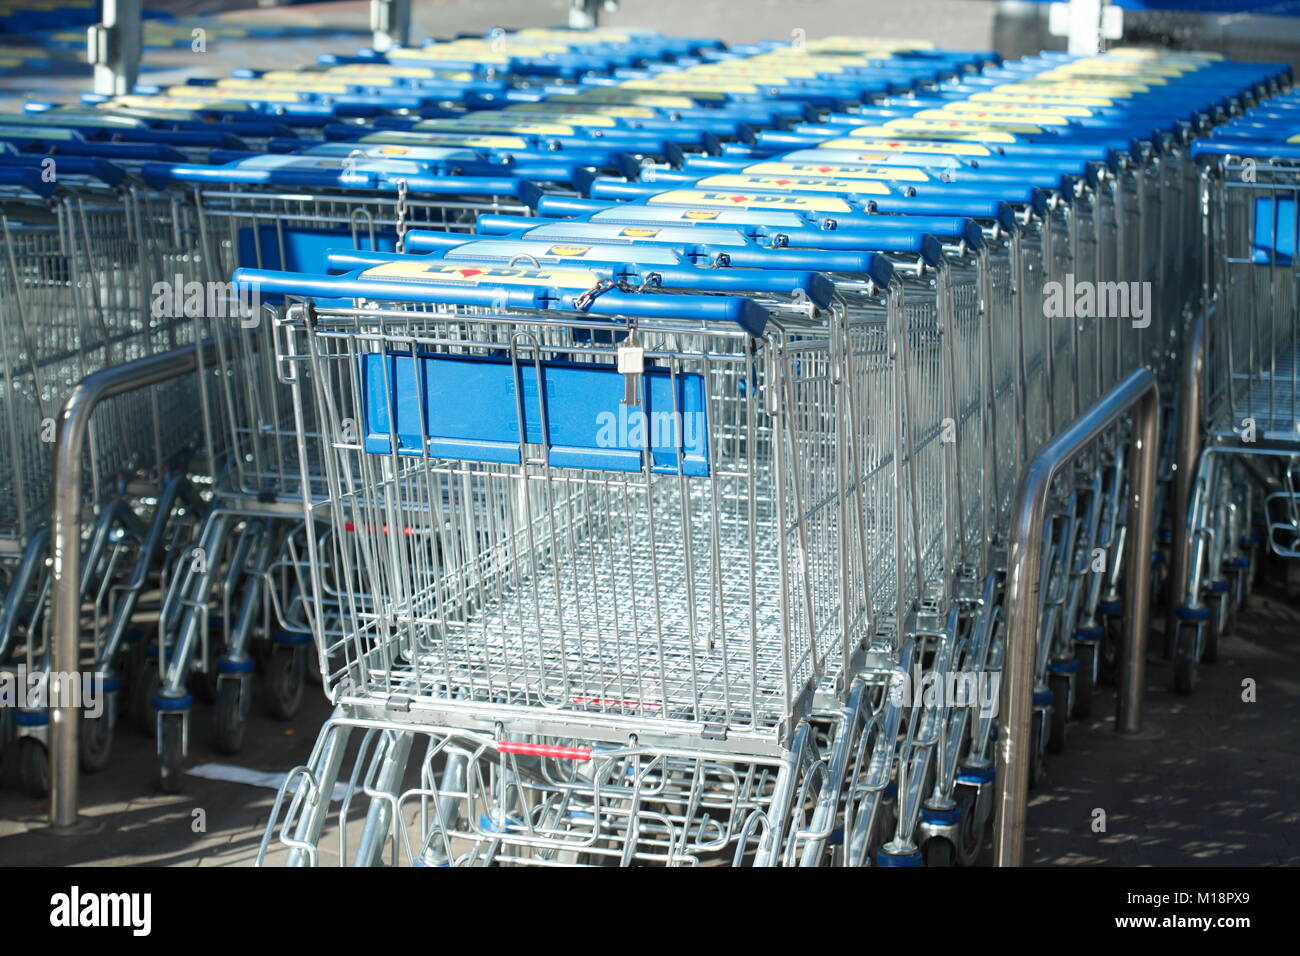 Row of shopping carts in front of shopping centre, Germany, Europe I Einkaufswagen in einer Reihe vor einem Einkaufszentrum, Verden an der aller, Nied Stock Photo